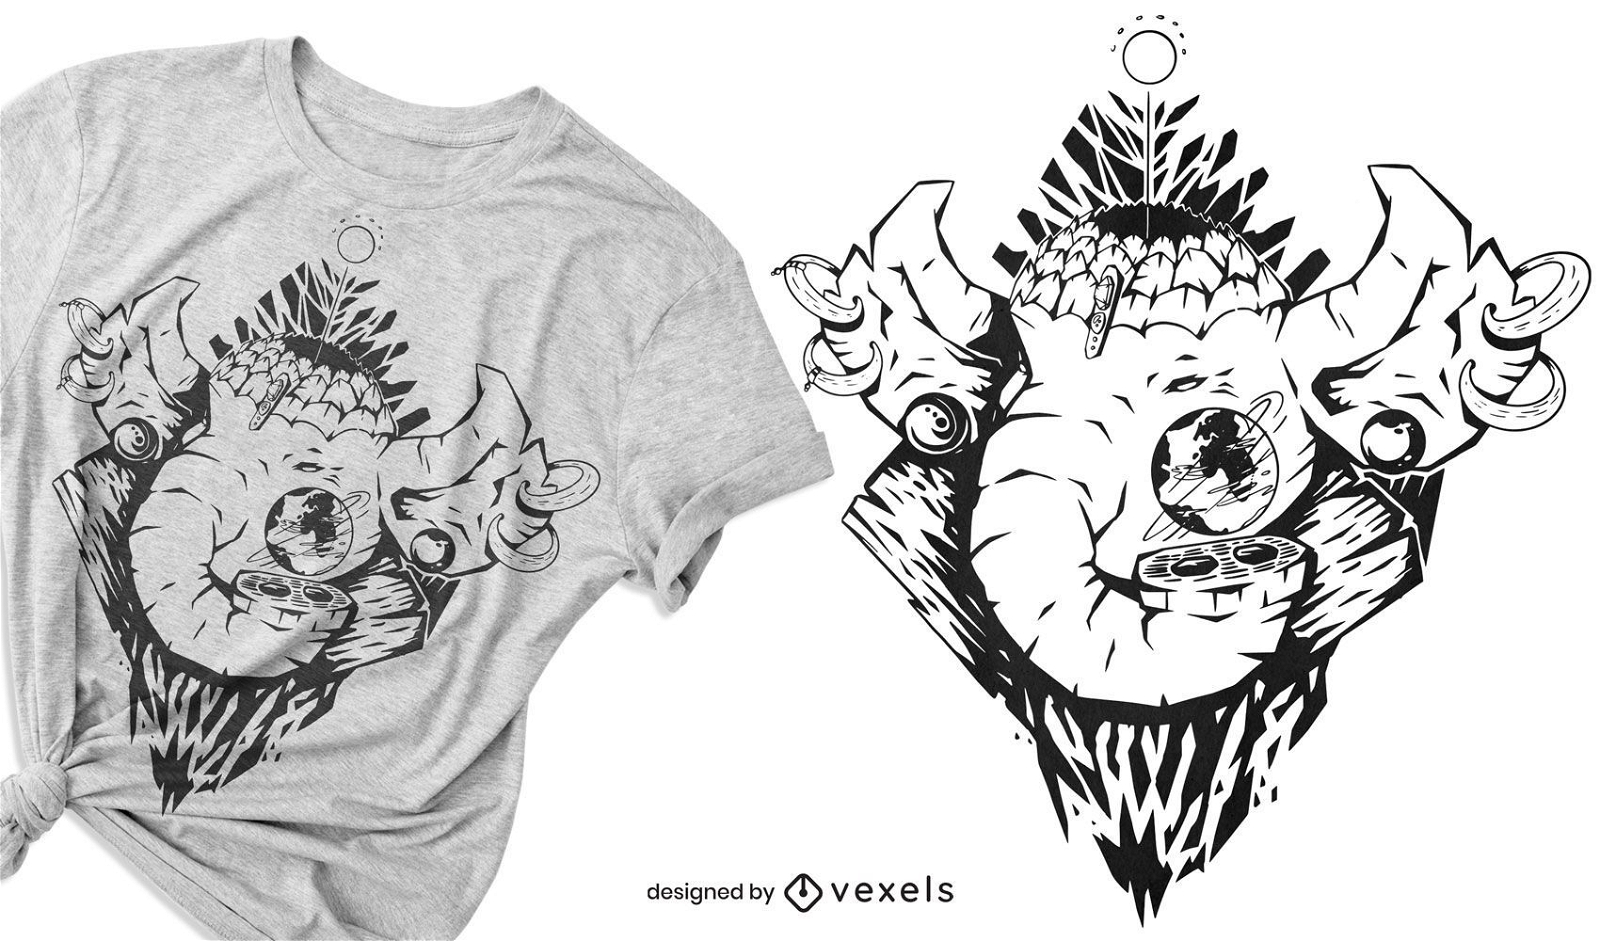 Mythisches Elefantent-shirt Design